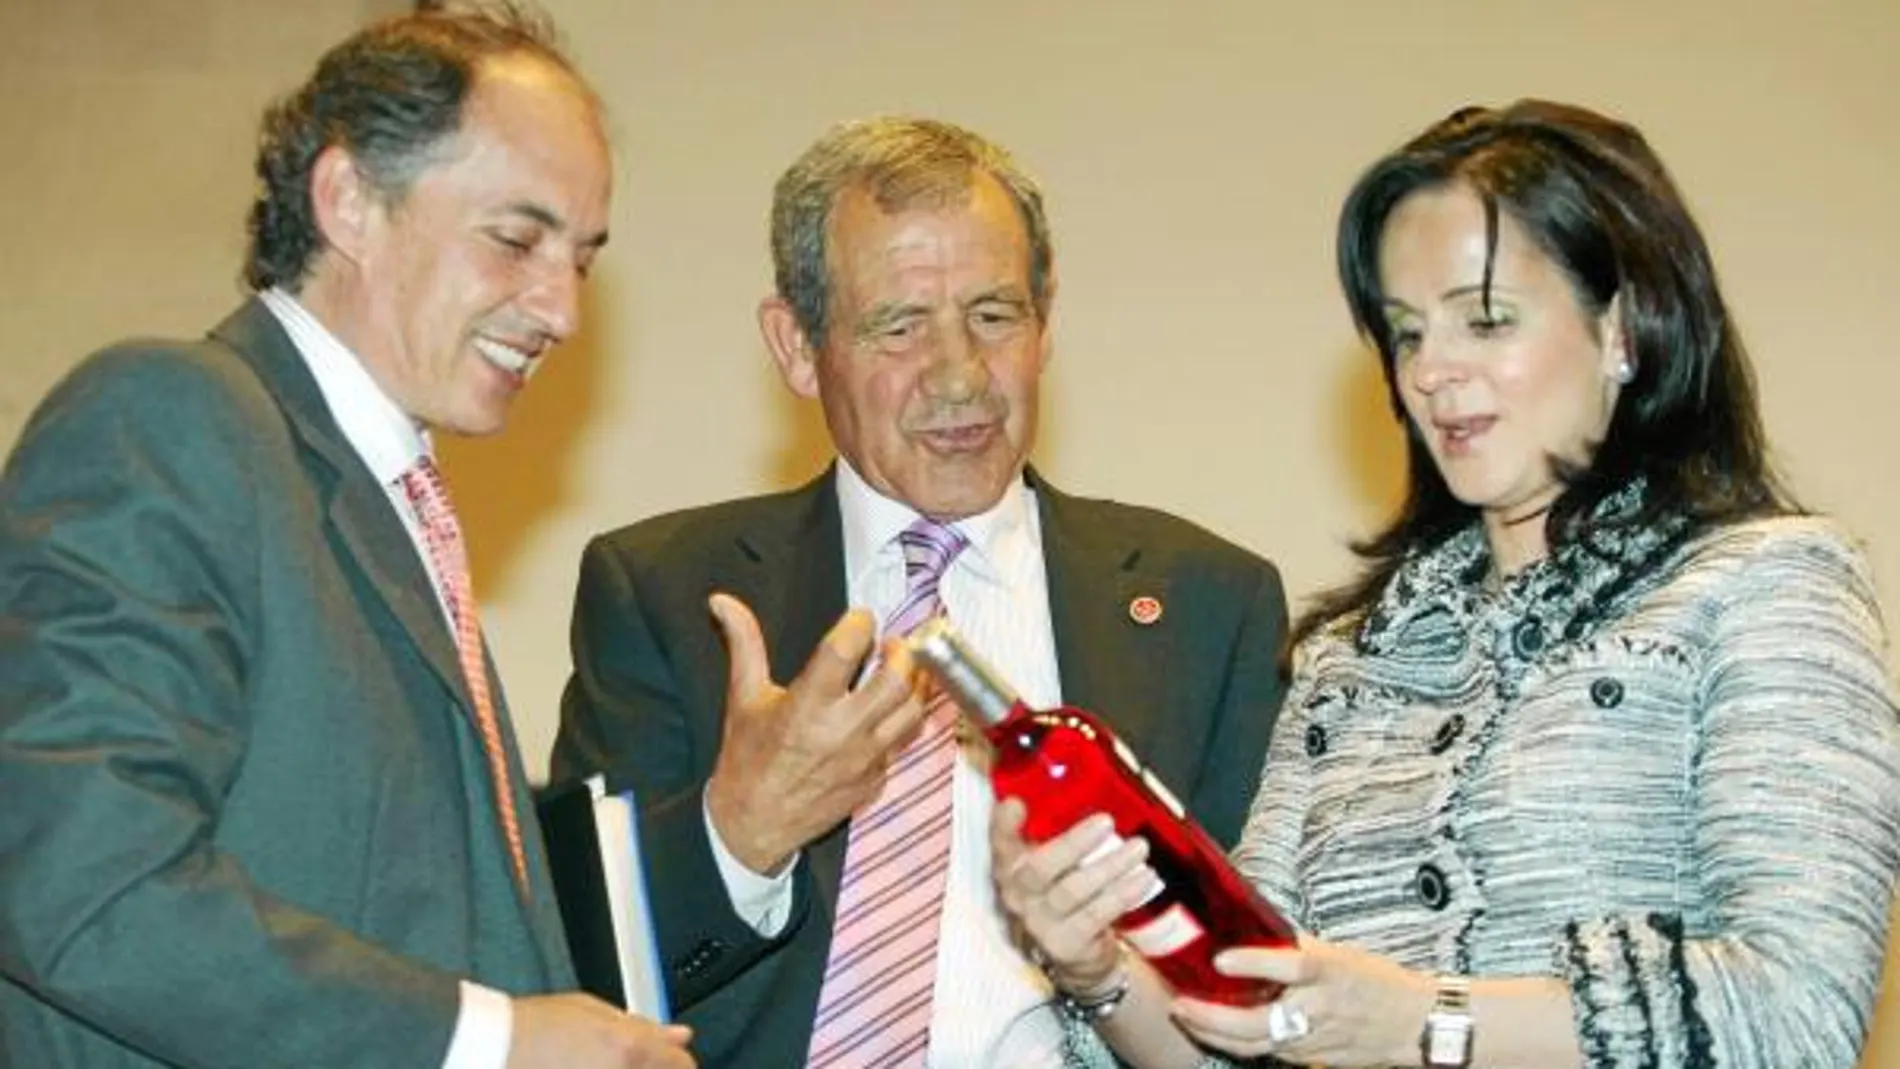 La consejera escucha las explicaciones de Gabriel Alonso, presidente de Urcacyl, sobre uno de los vinos ganadores